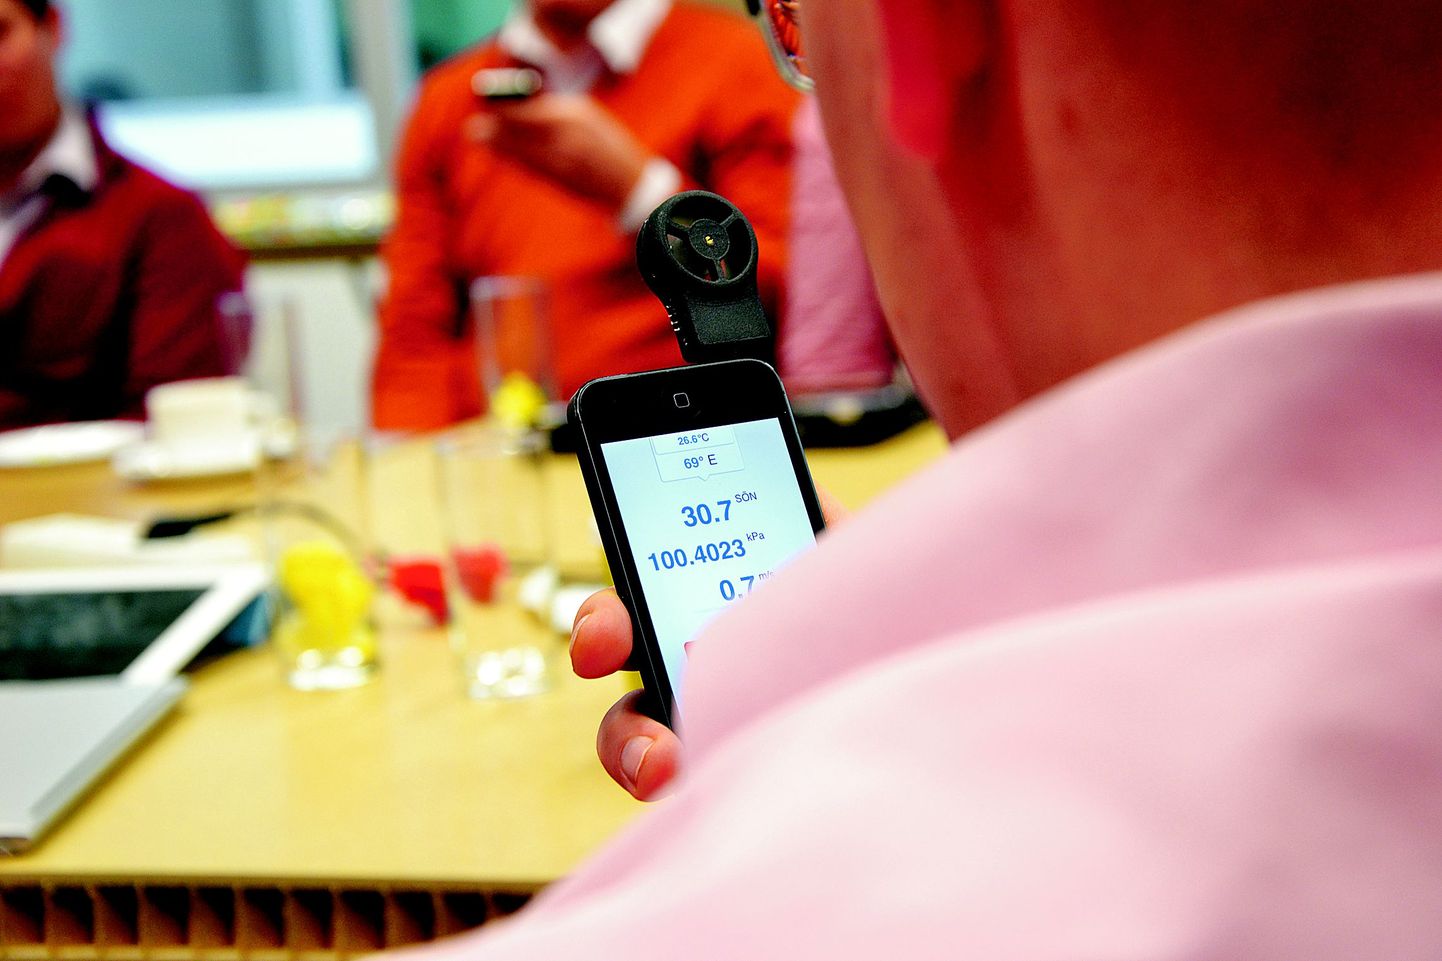 Eesti start-up ettevõte Shaka arendab nutitelefoni audioliidesesse ühendatavat tuulemõõtmisseadet, mis aitab näiteks surfajatel ja golfimängijatel saada täpset ilmastikuinfot. Lahendus võib huvitada tarbijaid üle maailma.